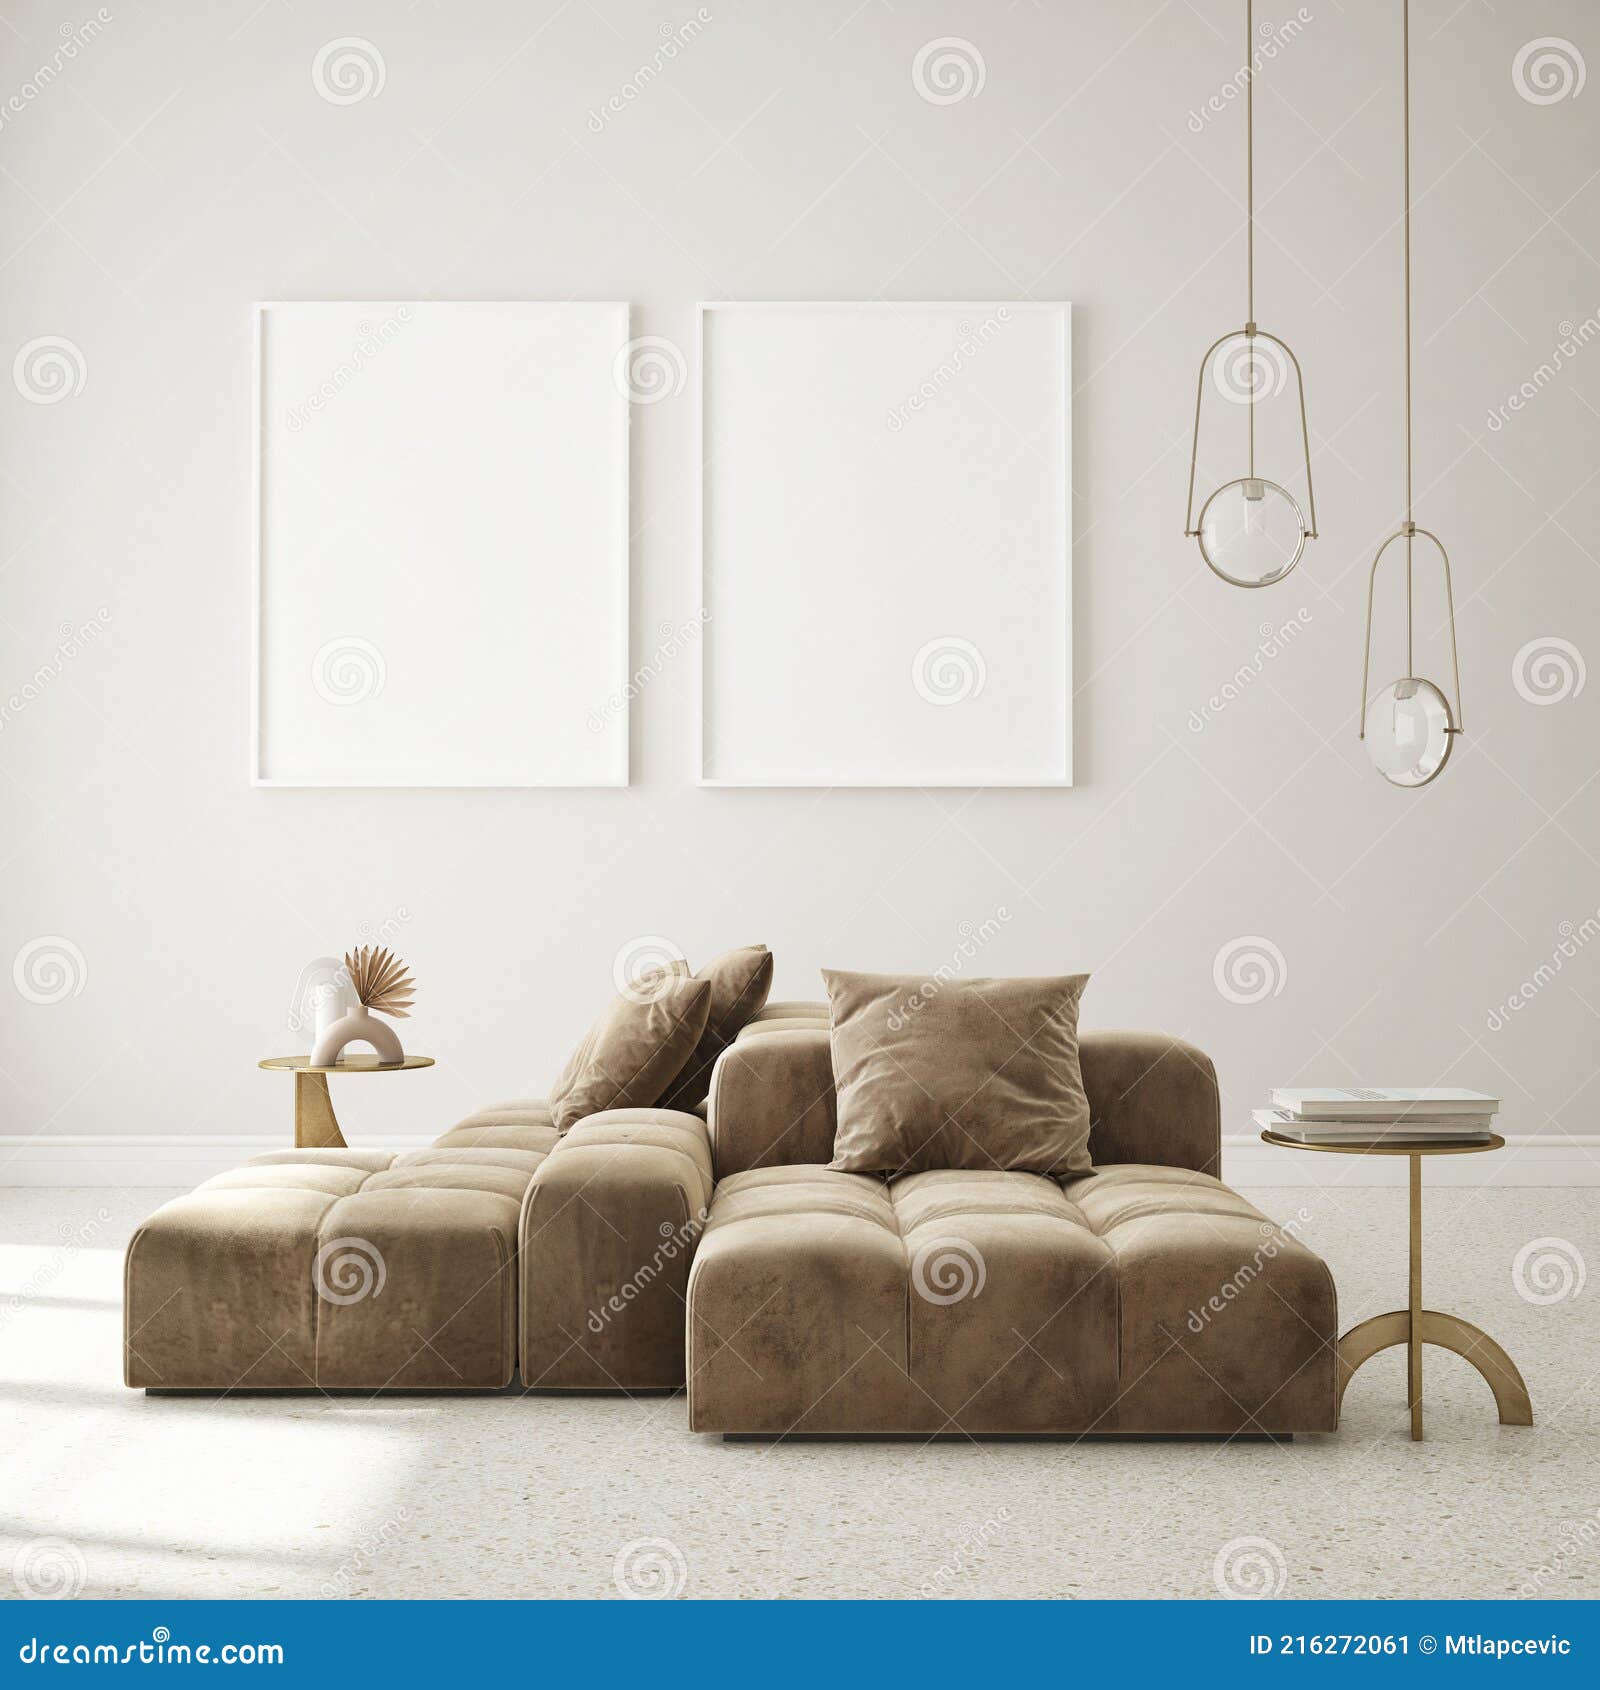 mock up poster frame in modern interior background living room art deco style 3d render